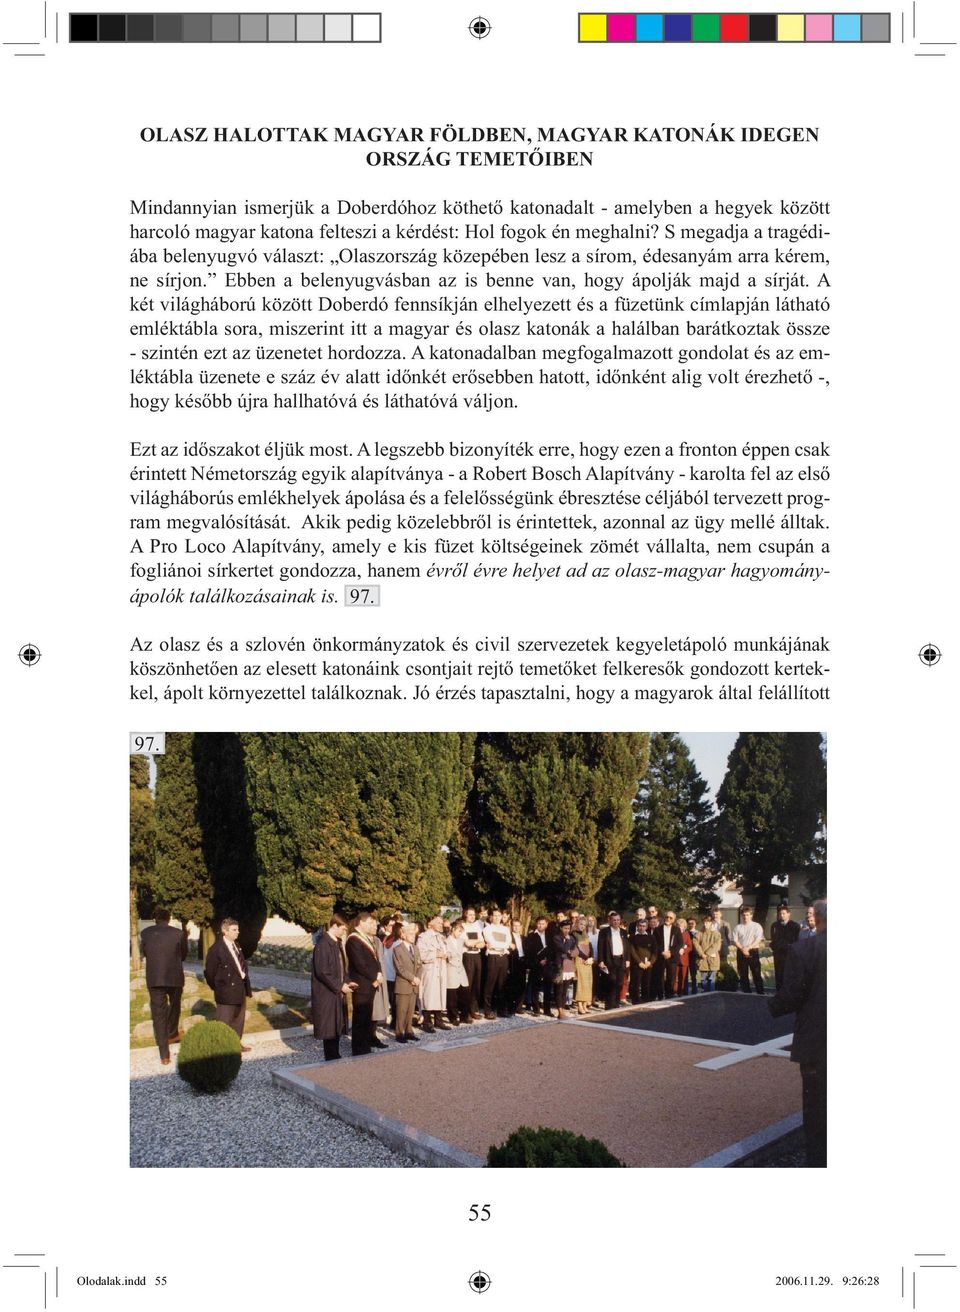 A két világháború között Doberdó fennsíkján elhelyezett és a füzetünk címlapján látható emléktábla sora, miszerint itt a magyar és olasz katonák a halálban barátkoztak össze - szintén ezt az üzenetet